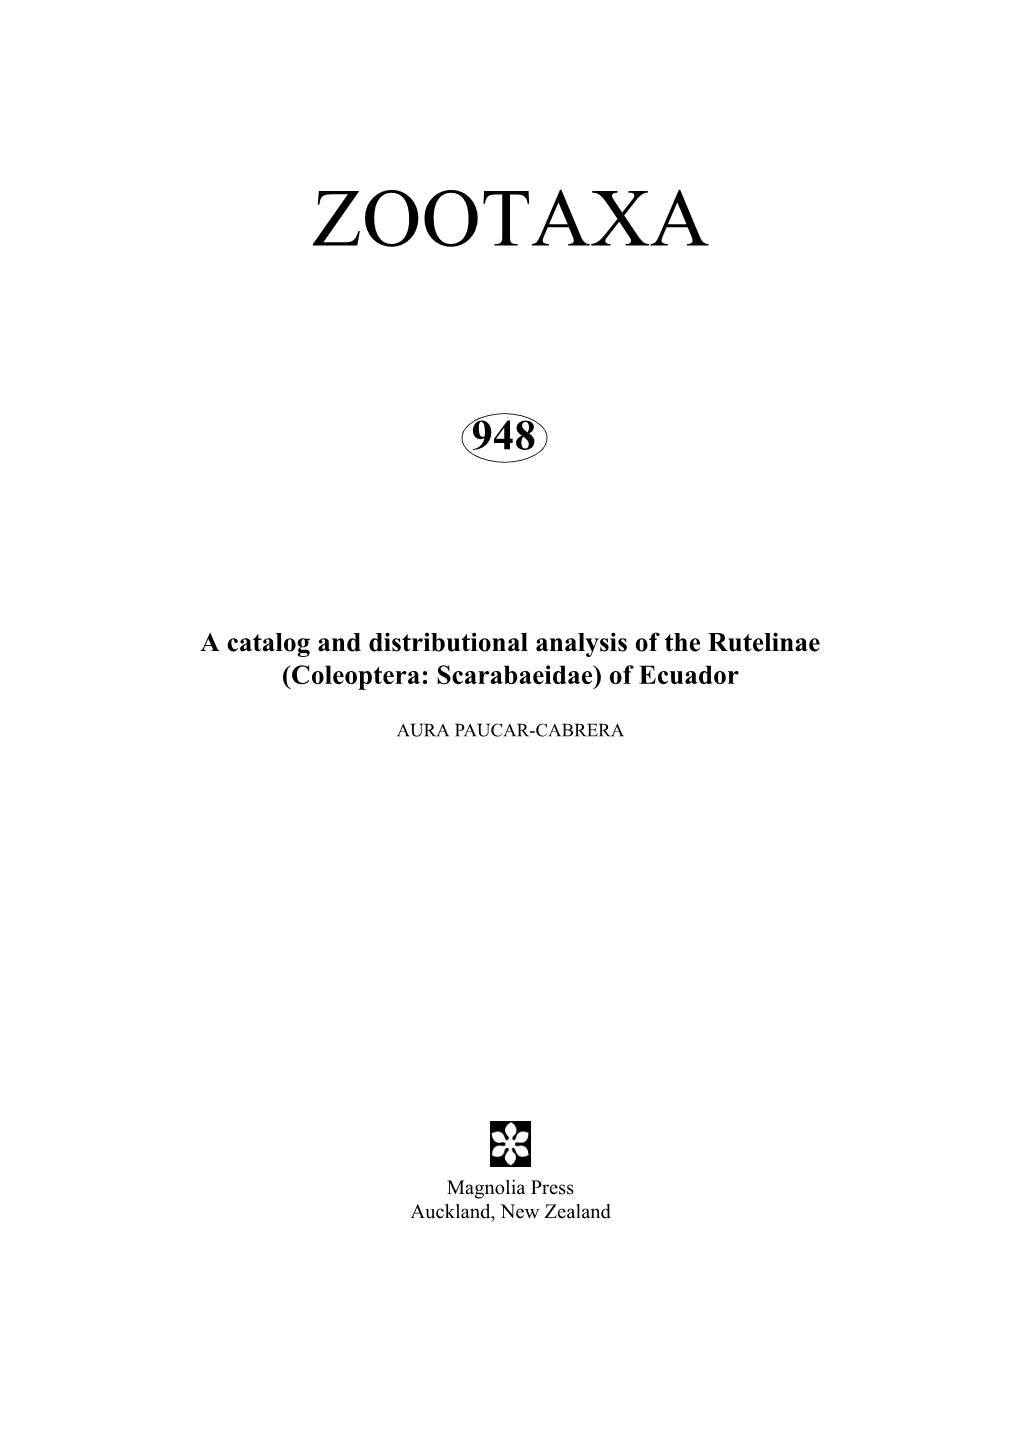 Zootaxa, Coleoptera, Scarabaeidae, Rutelinae, Ecuador, Catalog